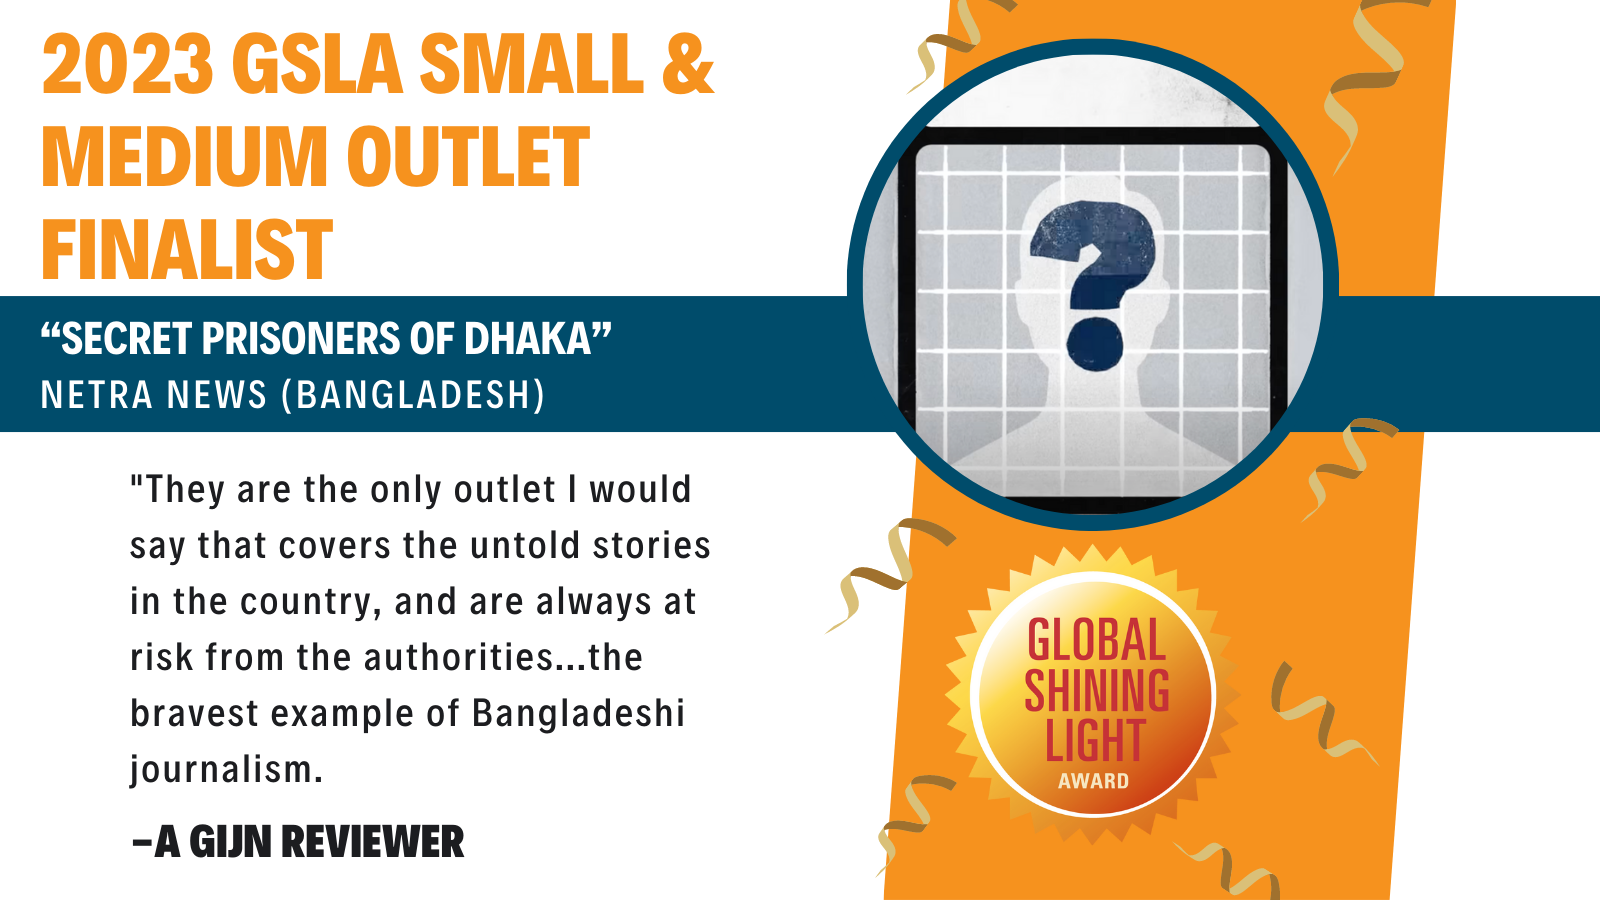 “Secret Prisoners of Dhaka” shortlisted for Global Shining Light Award 2023